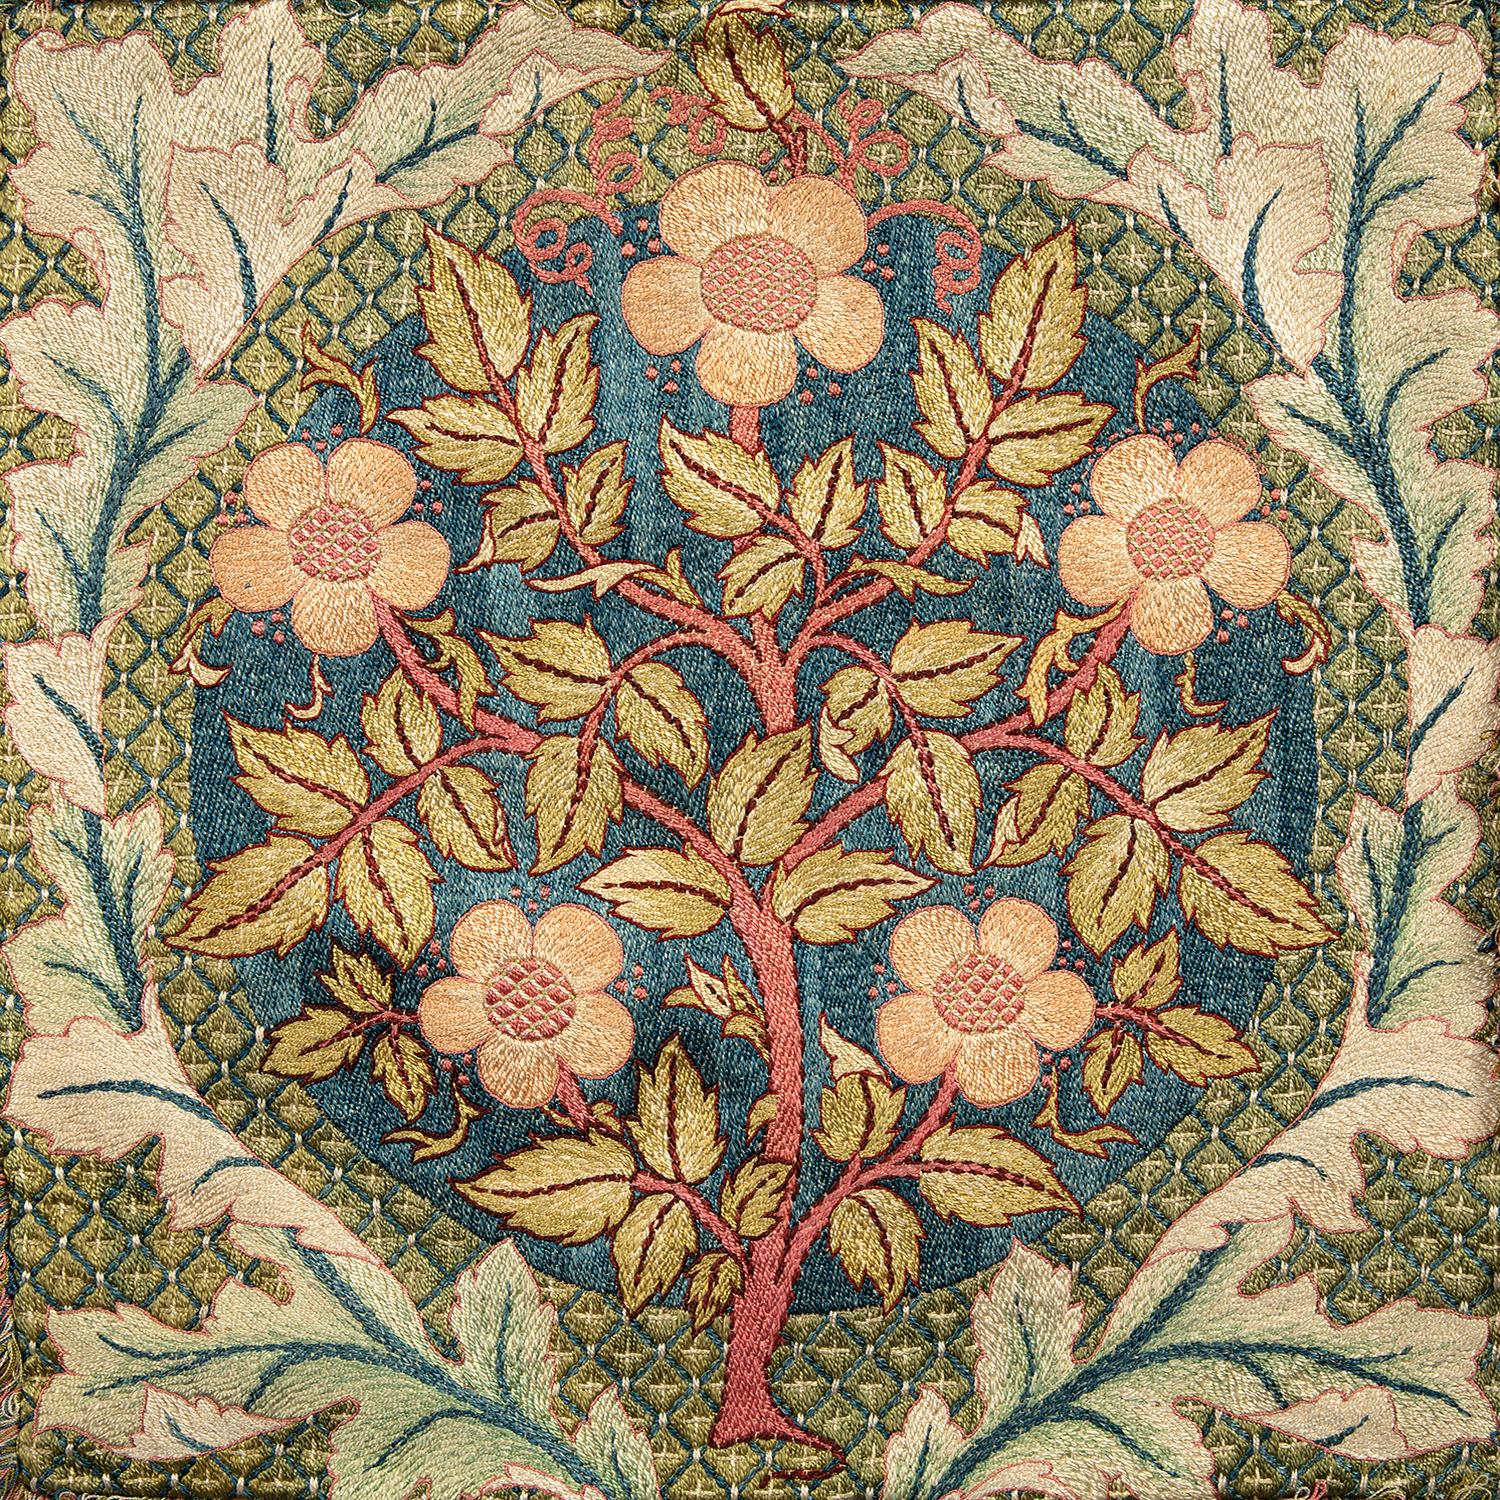 Botanical Botanical/Zoological William Morris Flowering Framed Textil ...